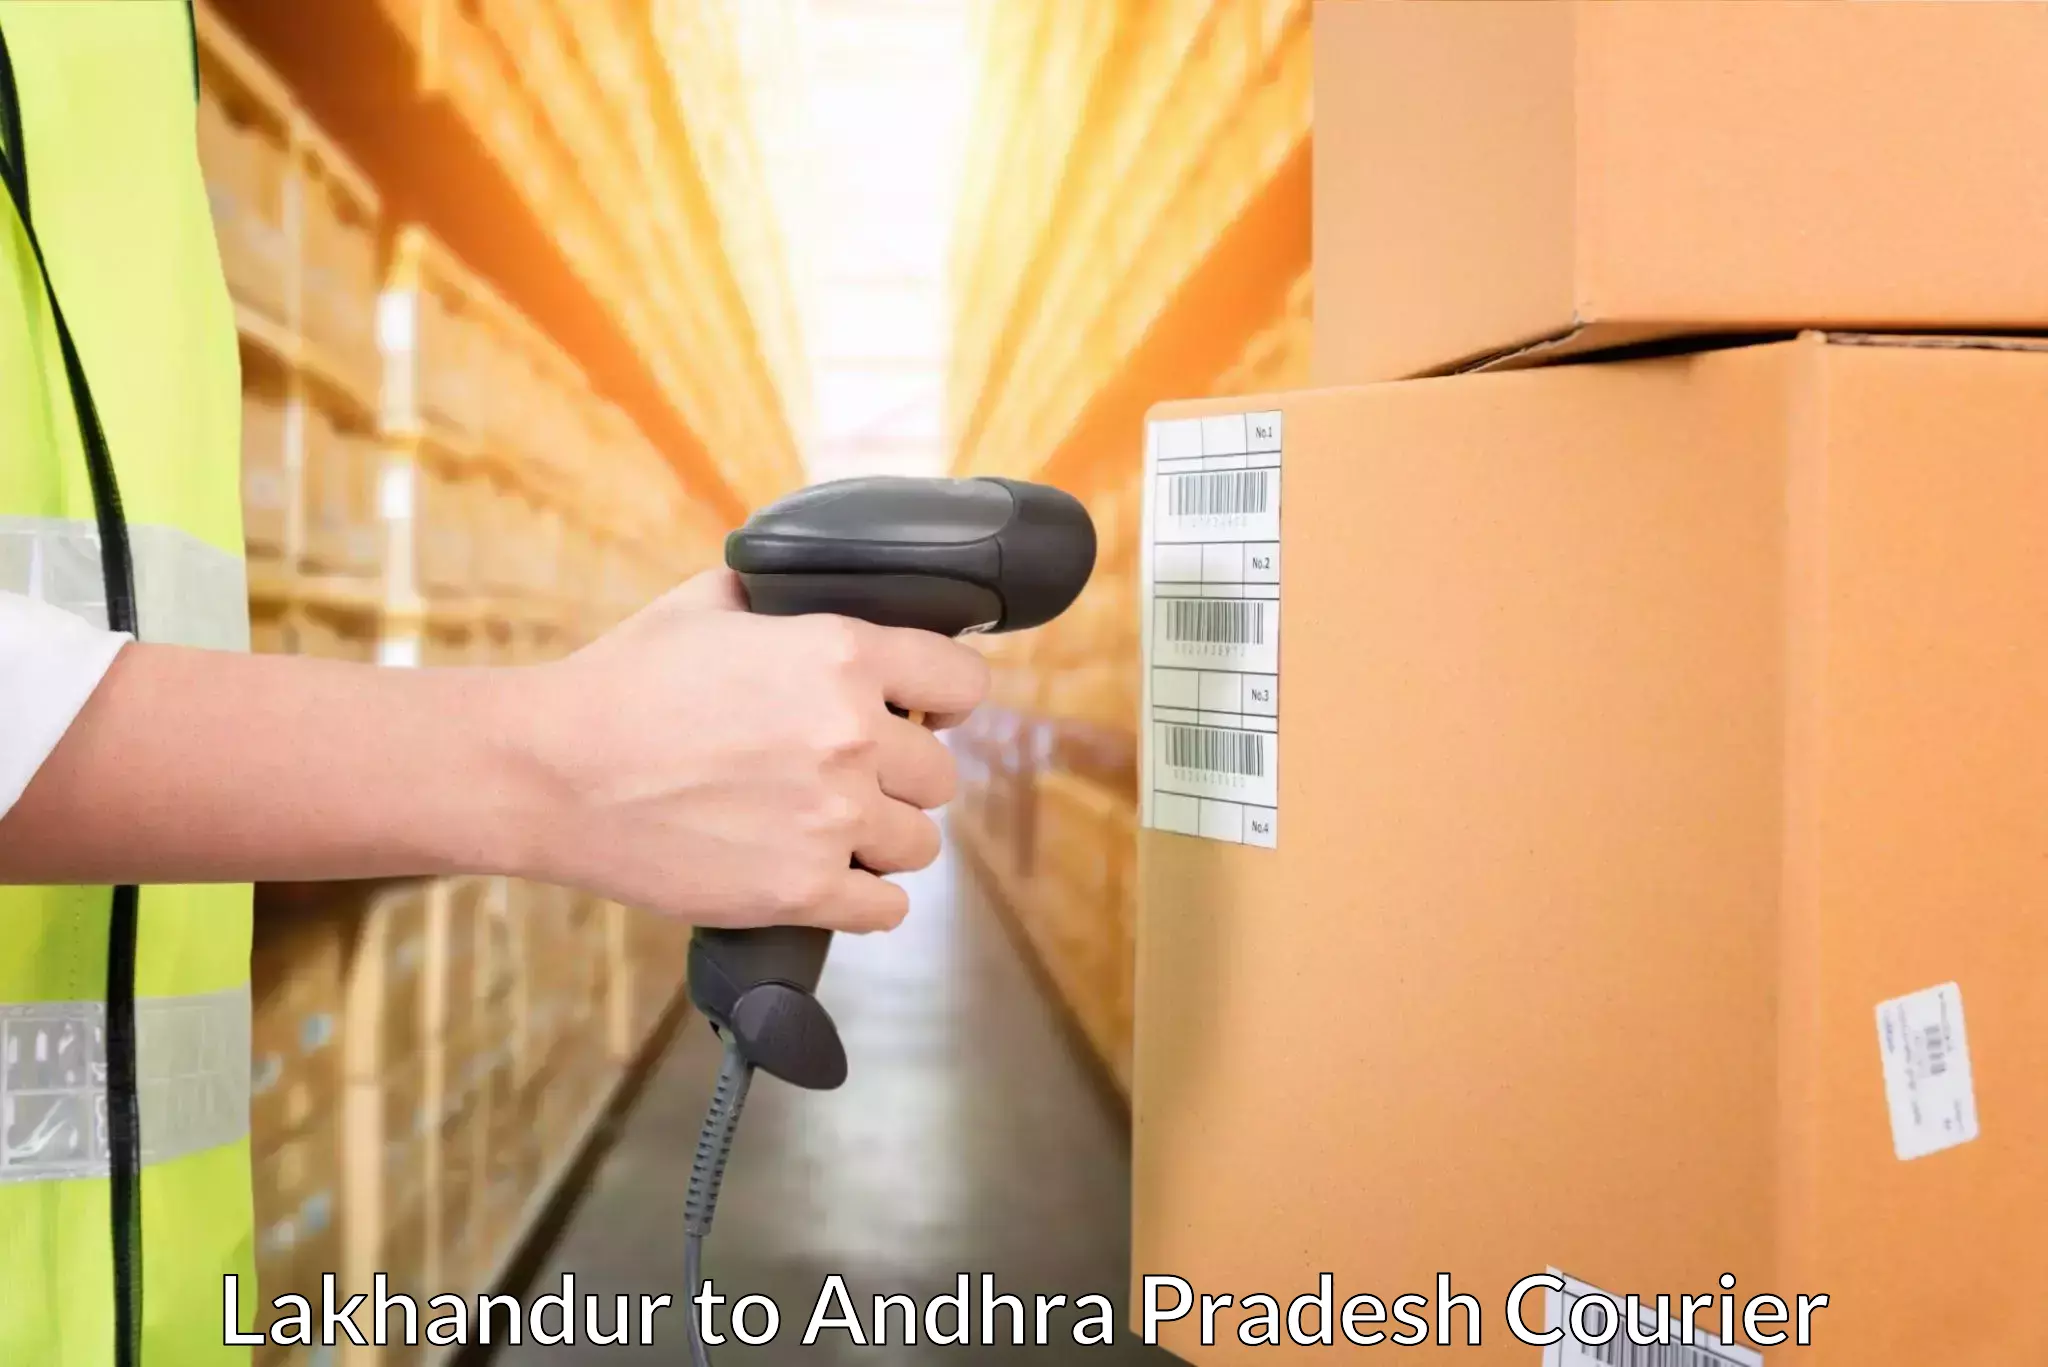 24-hour delivery options Lakhandur to Madakasira